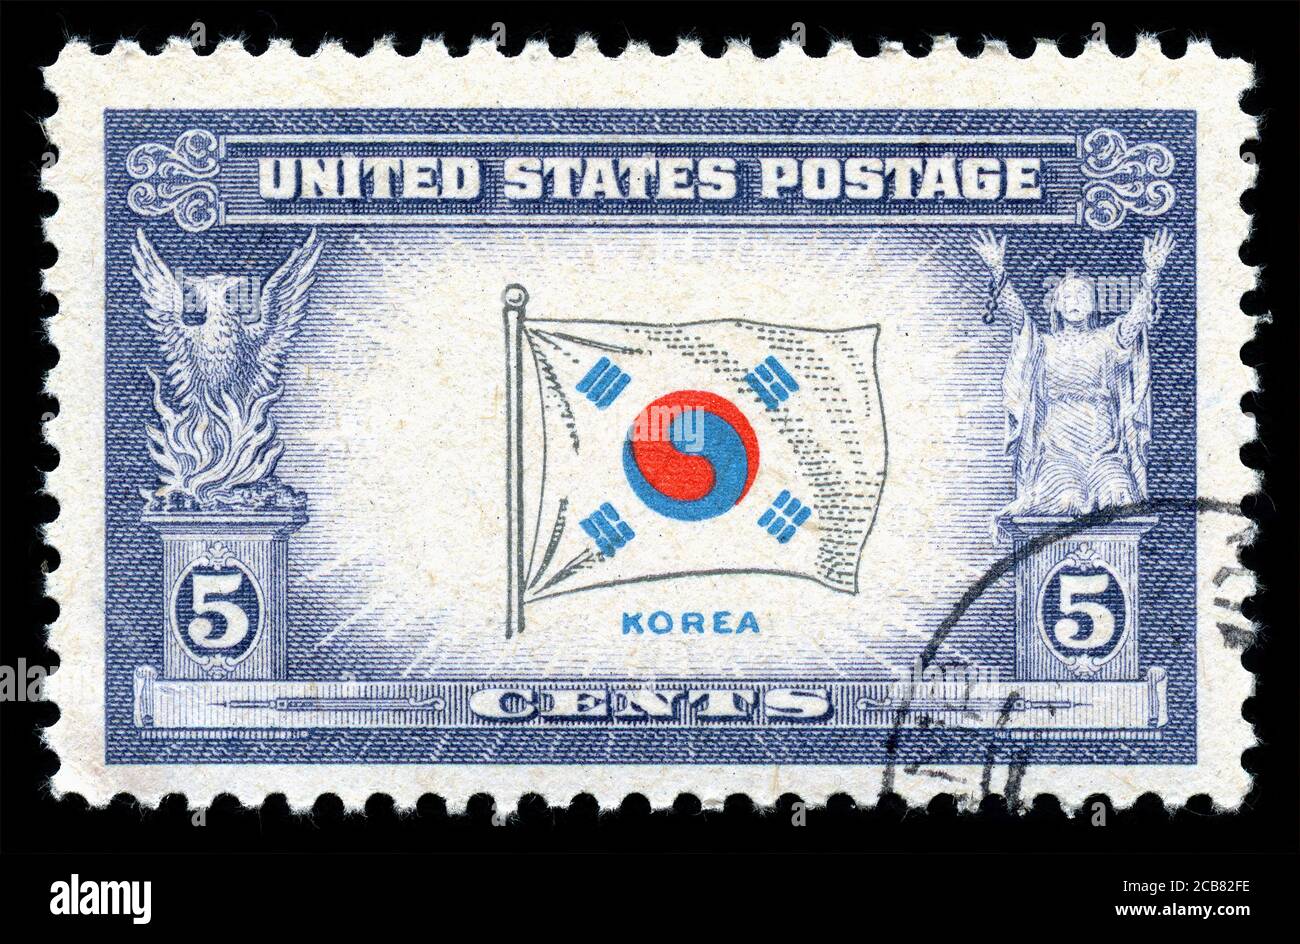 Londres, Royaume-Uni, février 19 2018 - Vintage 1943 USA a annulé le timbre-poste montrant un drapeau de la Corée du Sud qui collectionne la photo de stock Banque D'Images